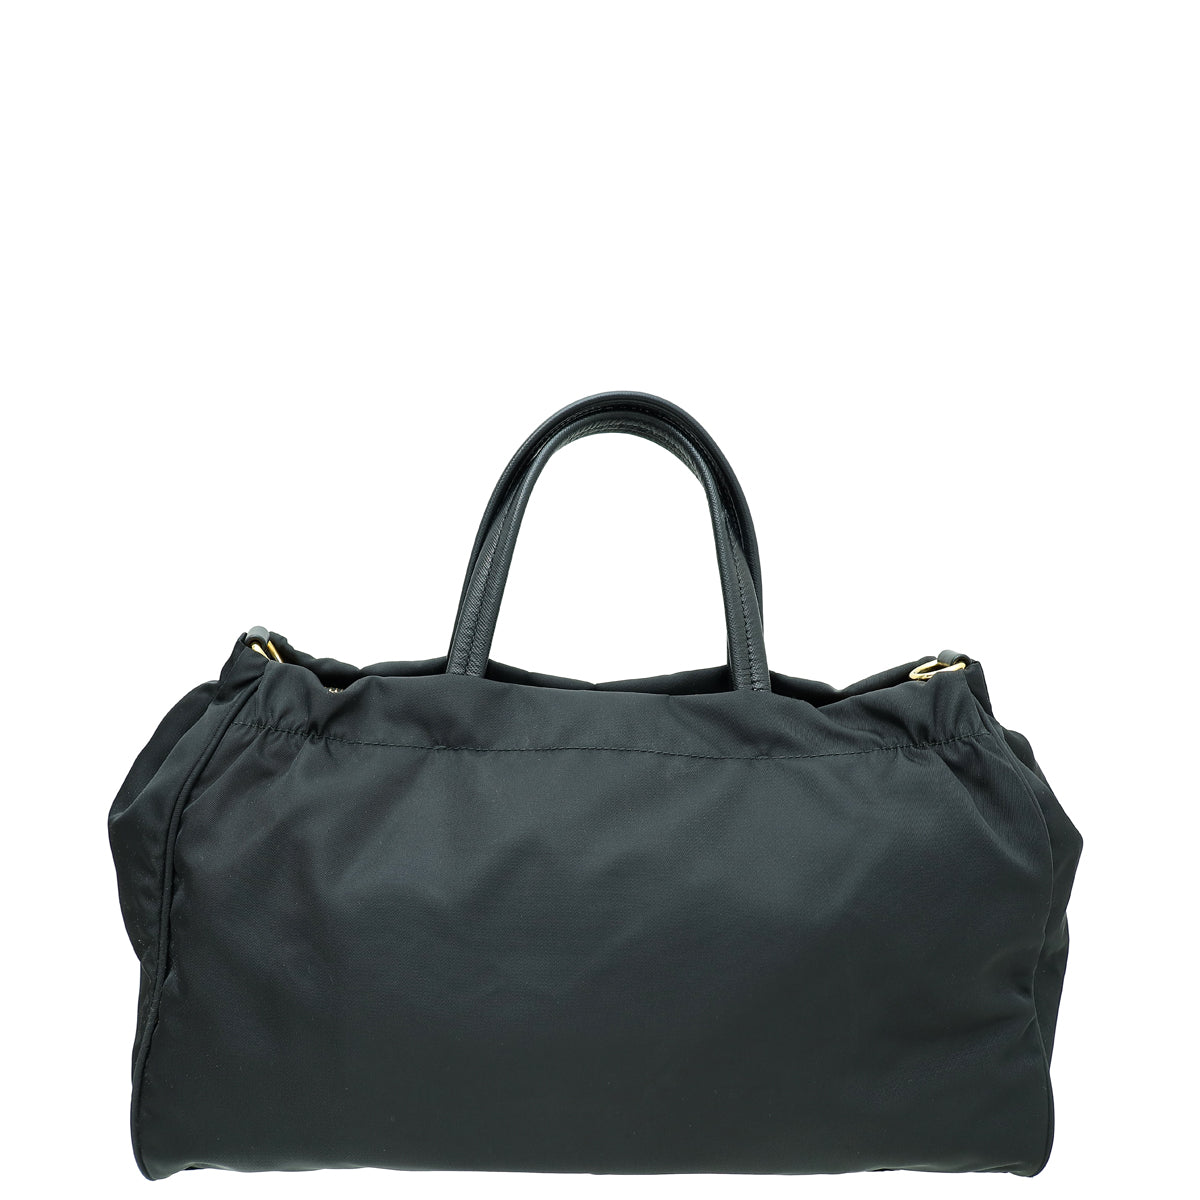 Prada Black Tessuto Convertible Tote Bag